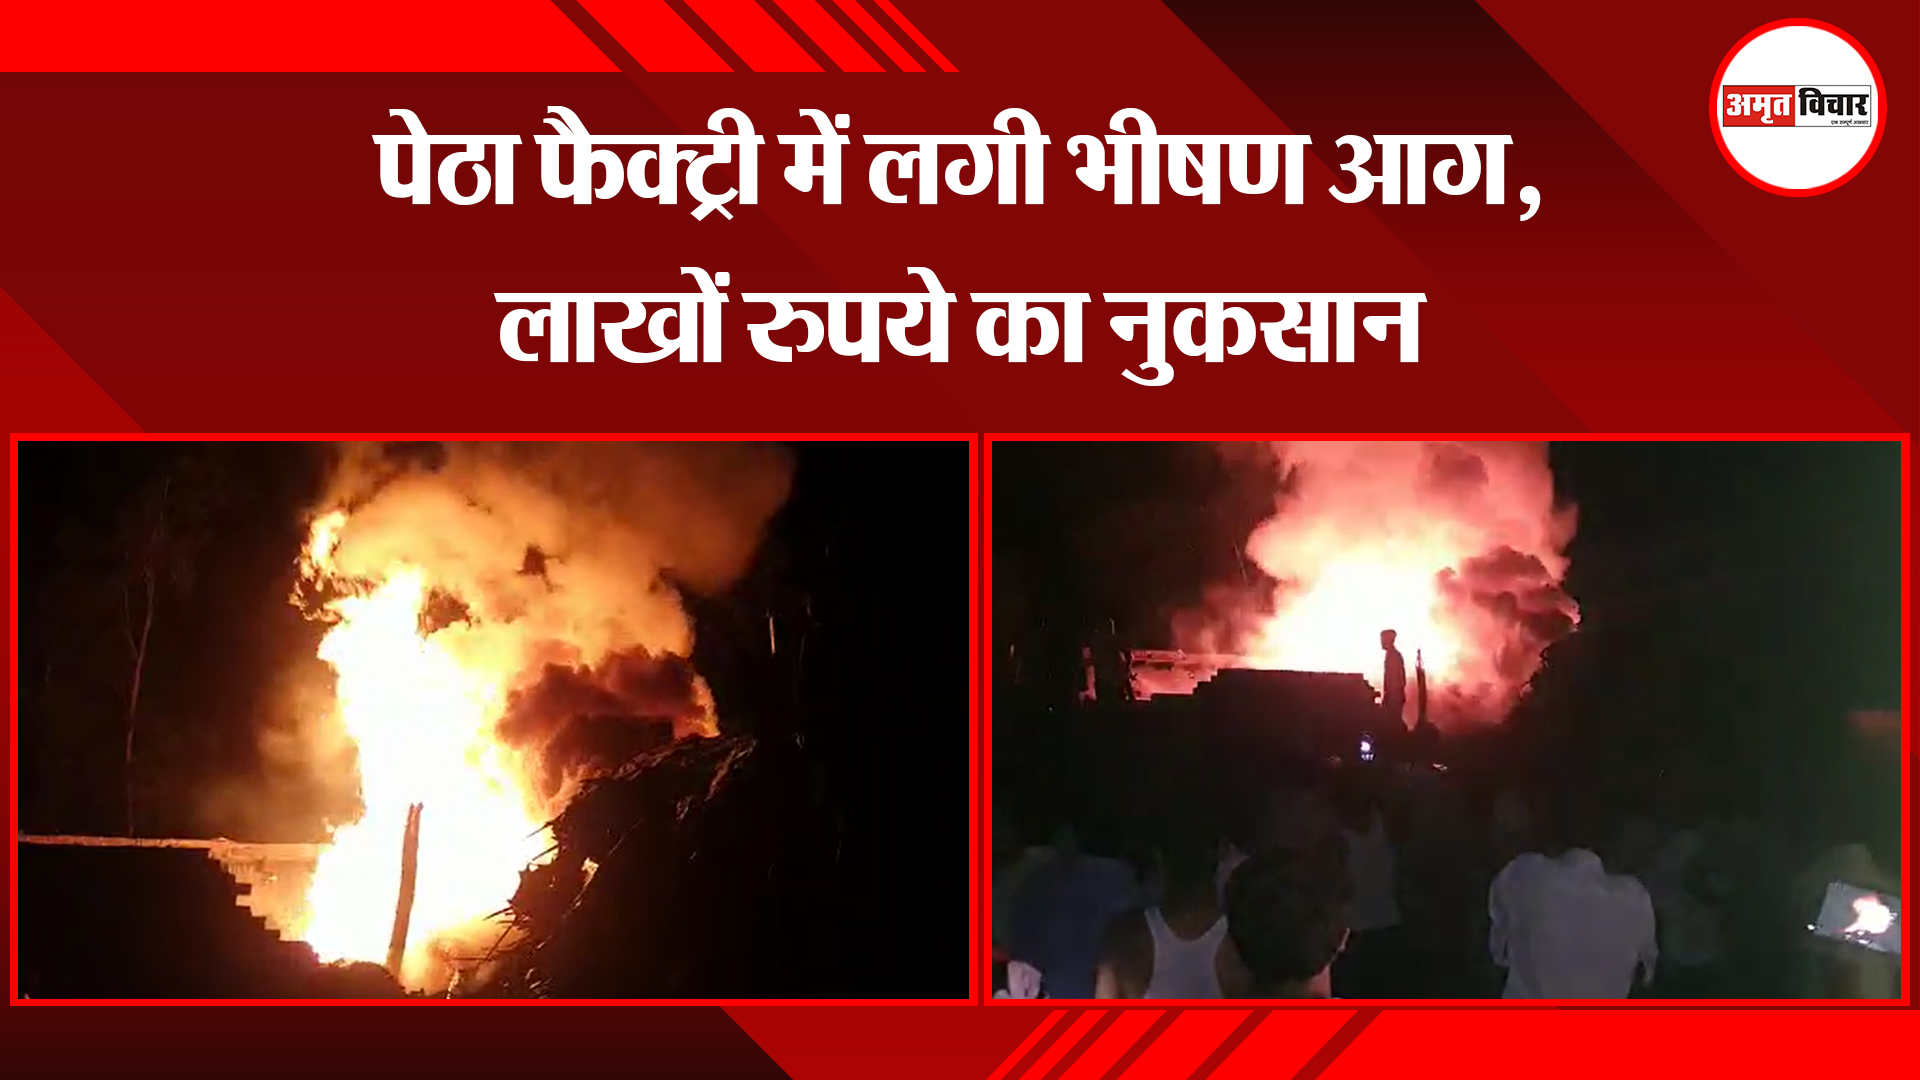 मुरादाबाद: पेठा फैक्ट्री में लगी भीषण आग, लाखों रुपये का नुकसान